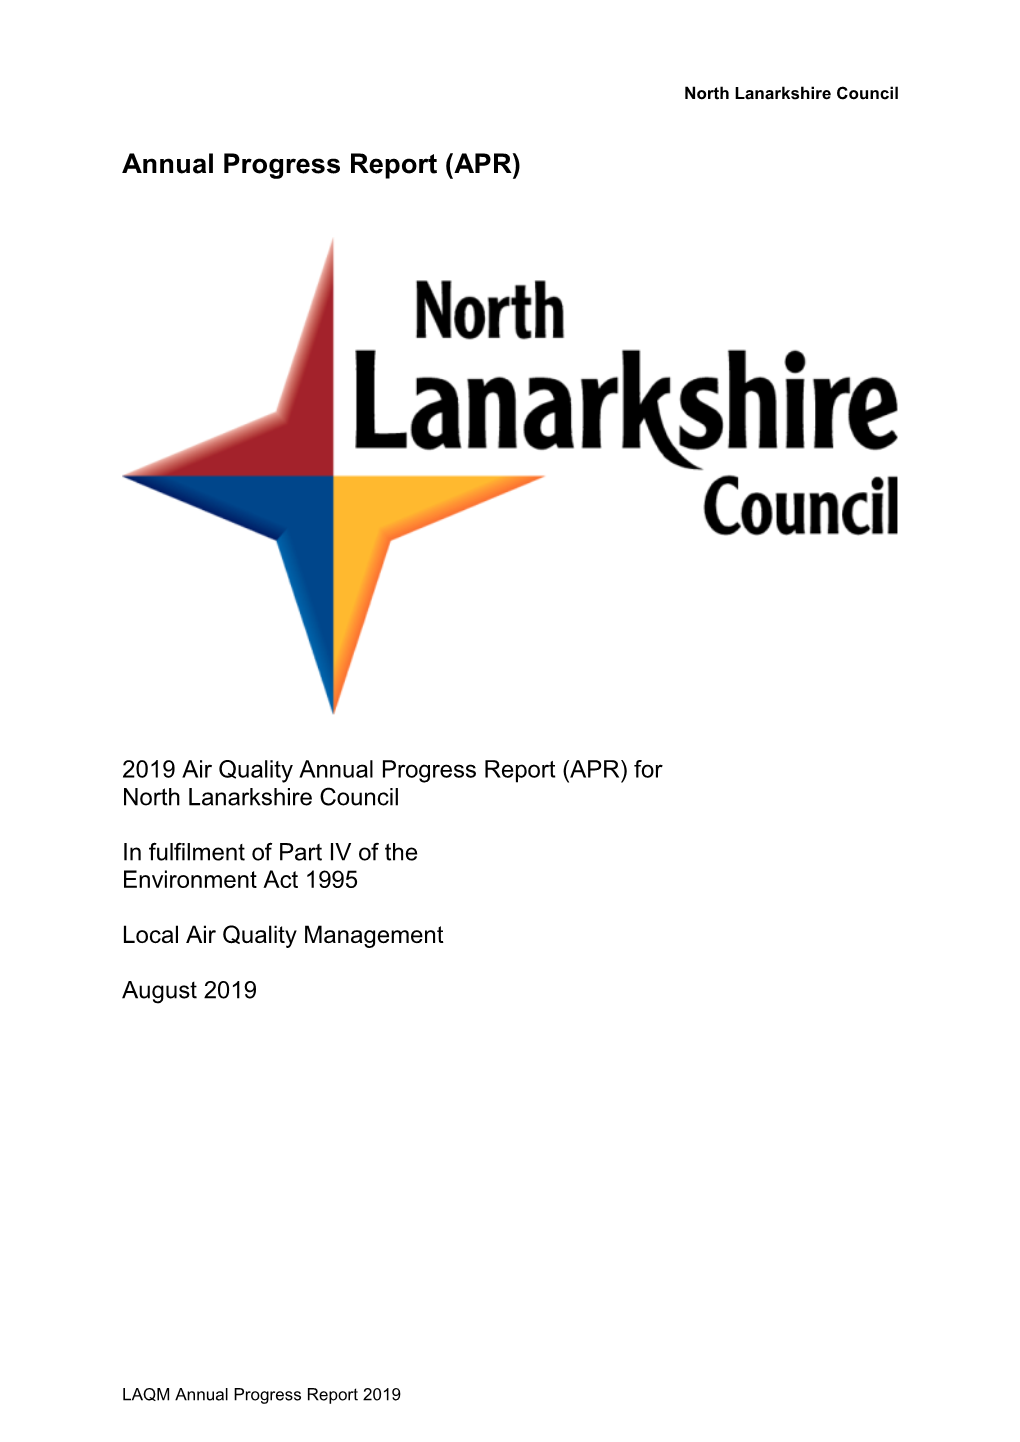 Progress Report 2019 North Lanarkshire Council